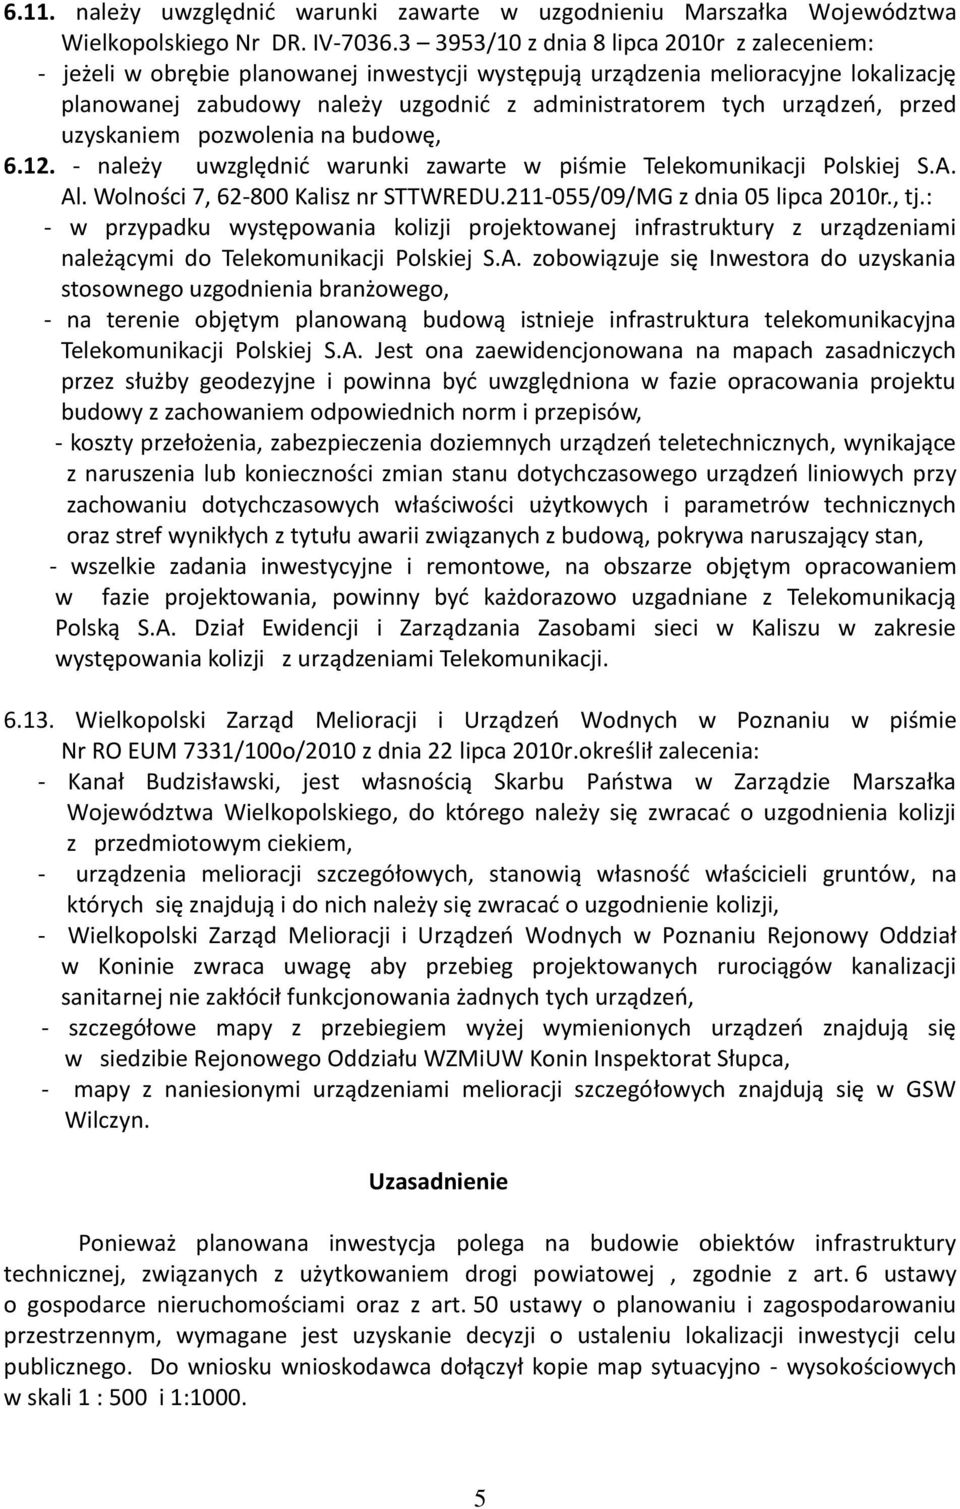 urządzeo, przed uzyskaniem pozwolenia na budowę, 6.12. - należy uwzględnid warunki zawarte w piśmie Telekomunikacji Polskiej S.A. Al. Wolności 7, 62-800 Kalisz nr STTWREDU.